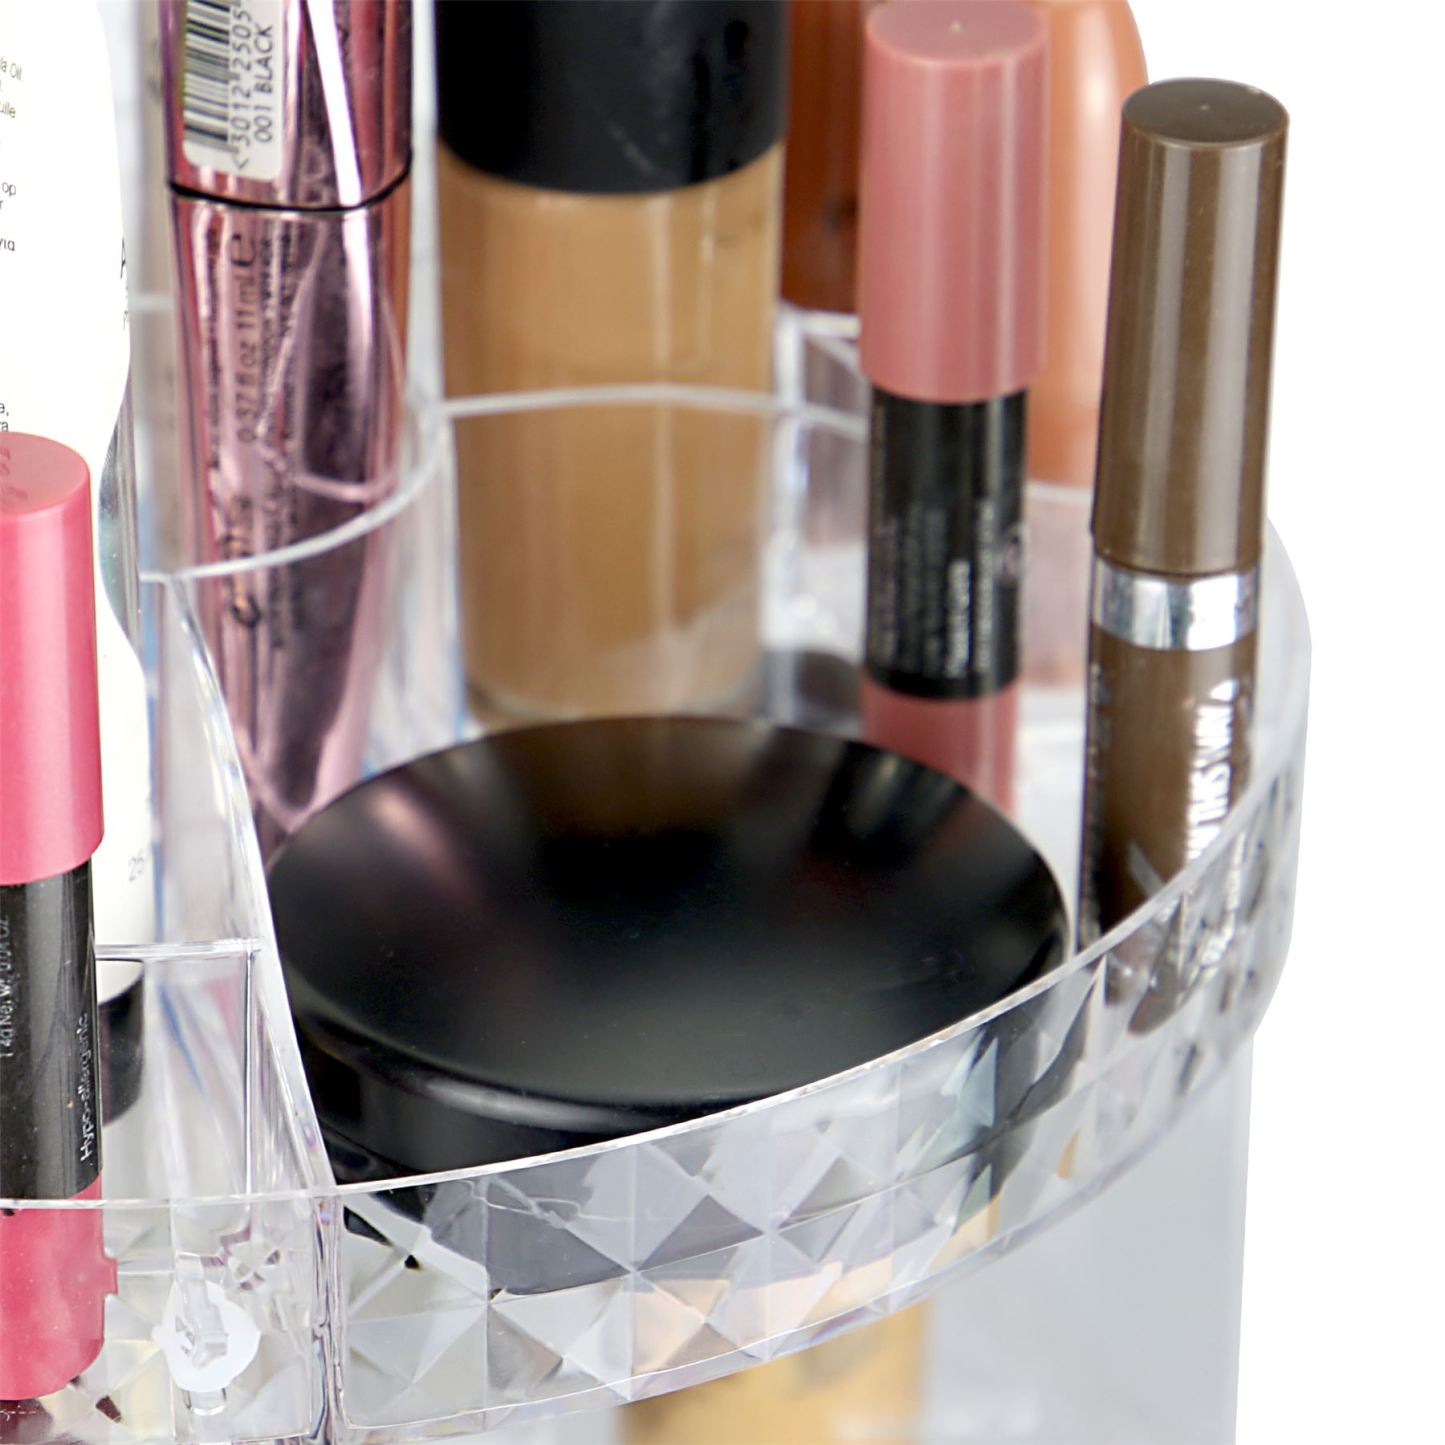 Rotating Cosmetic Makeup Organiser | Pukkr